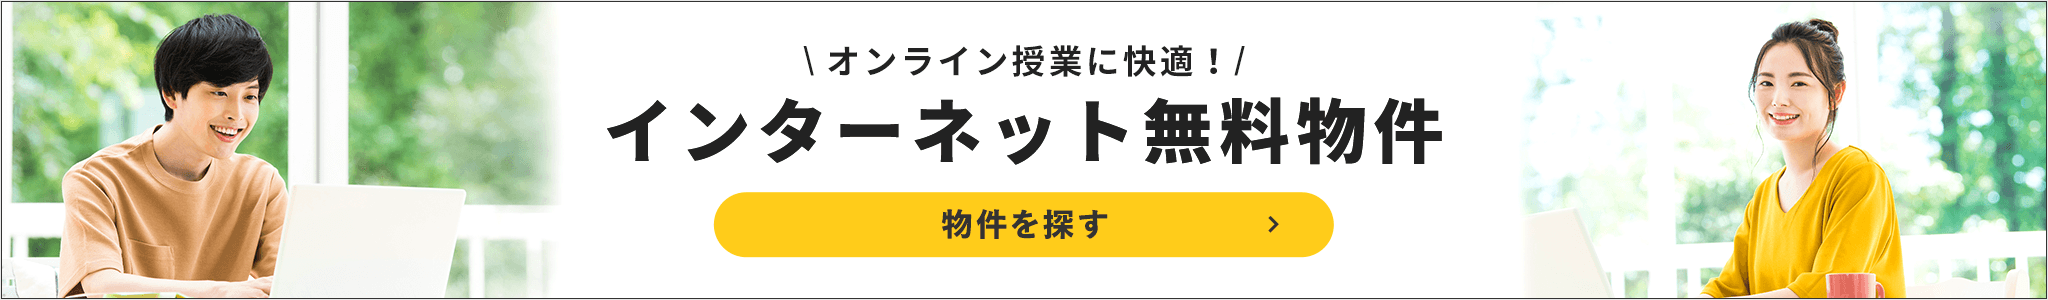 賃貸・こだわり特集・秋田栄養短期大学向け　インターネット無料物件